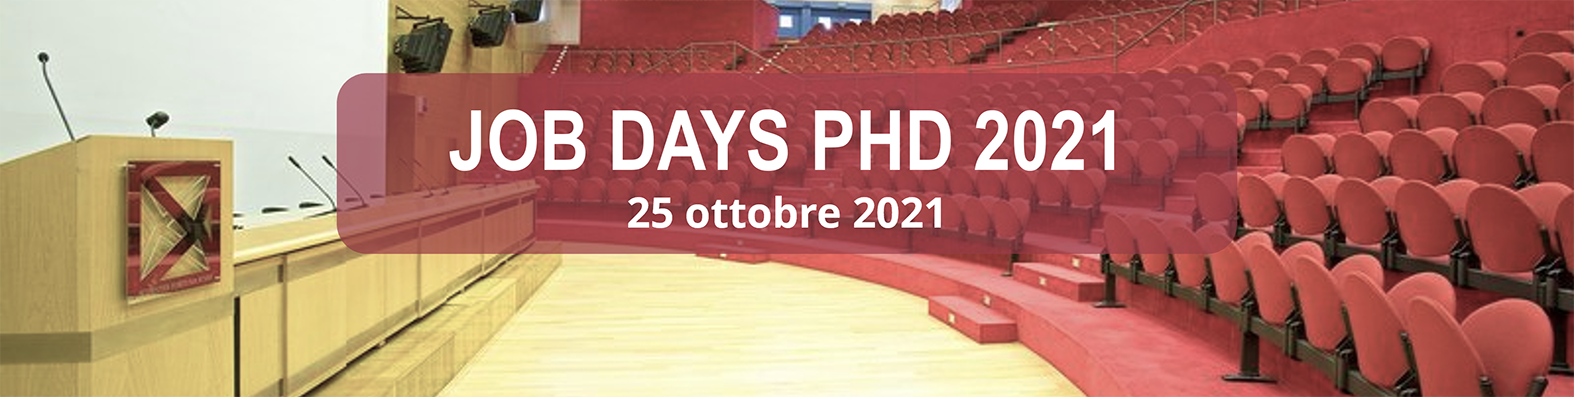 Job Days PhD 2021